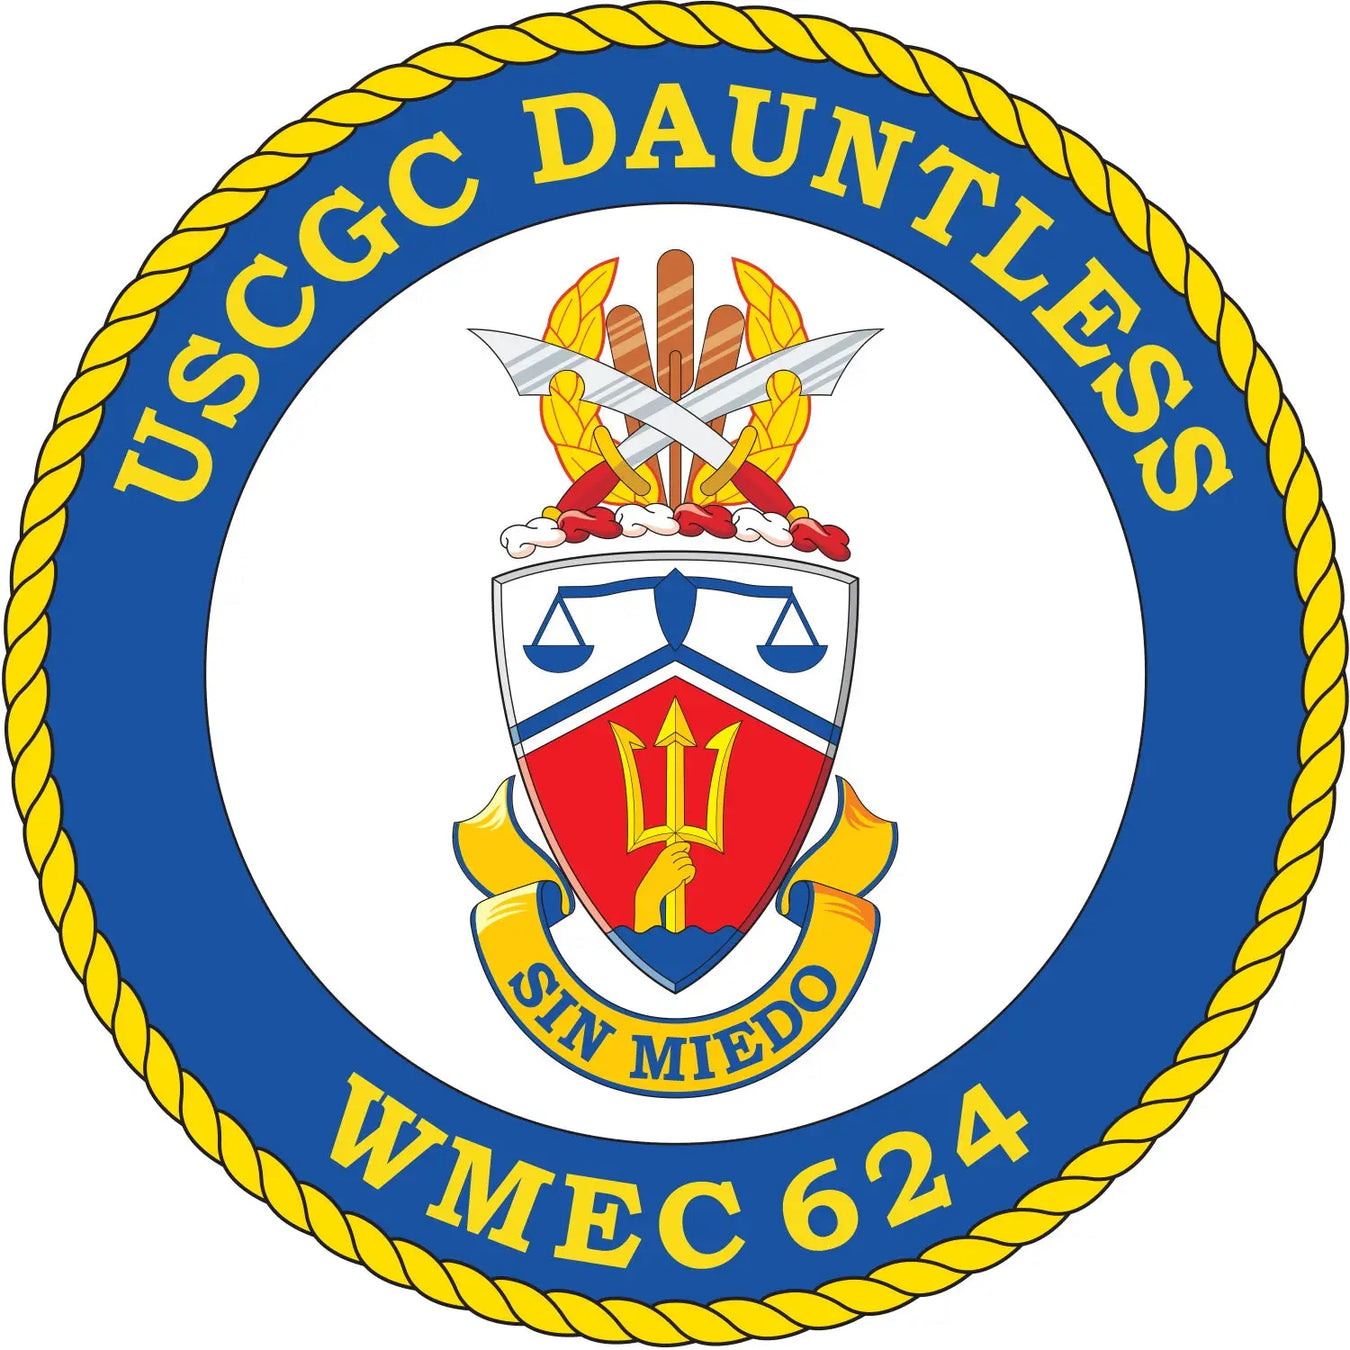 USCGC Dauntless (WMEC-624)